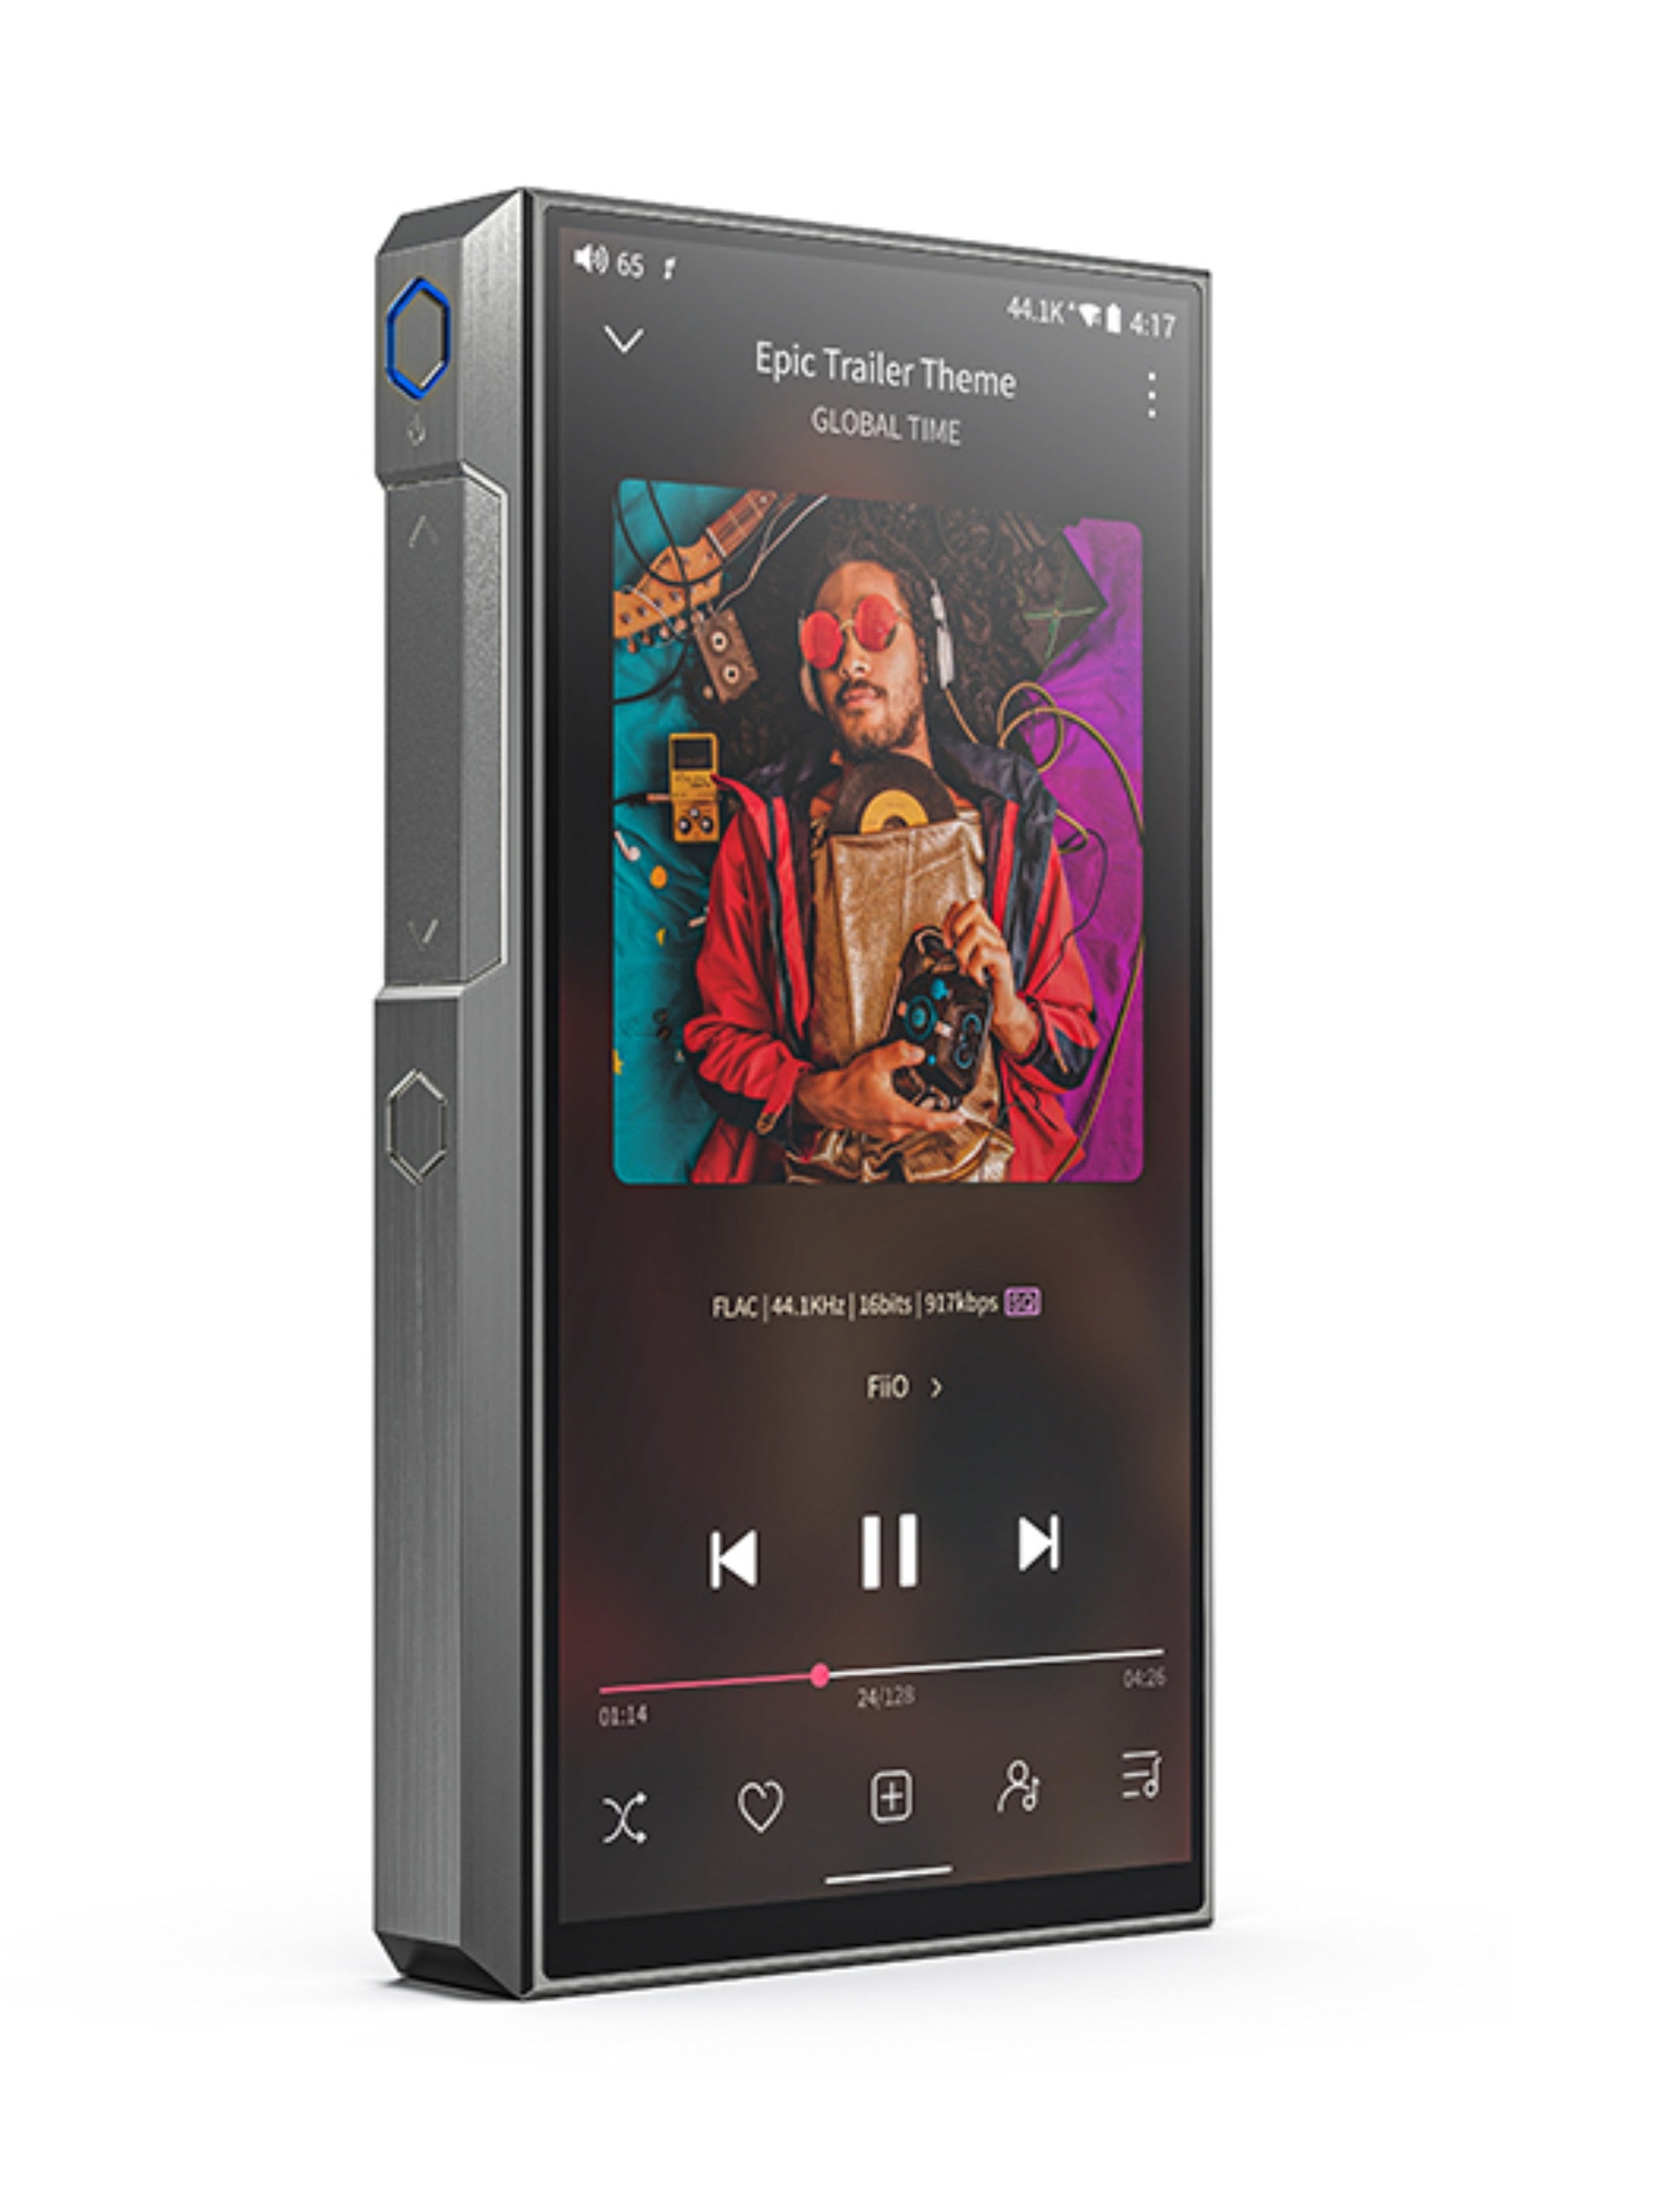 FiiO M11 Plus Digital Audio Player